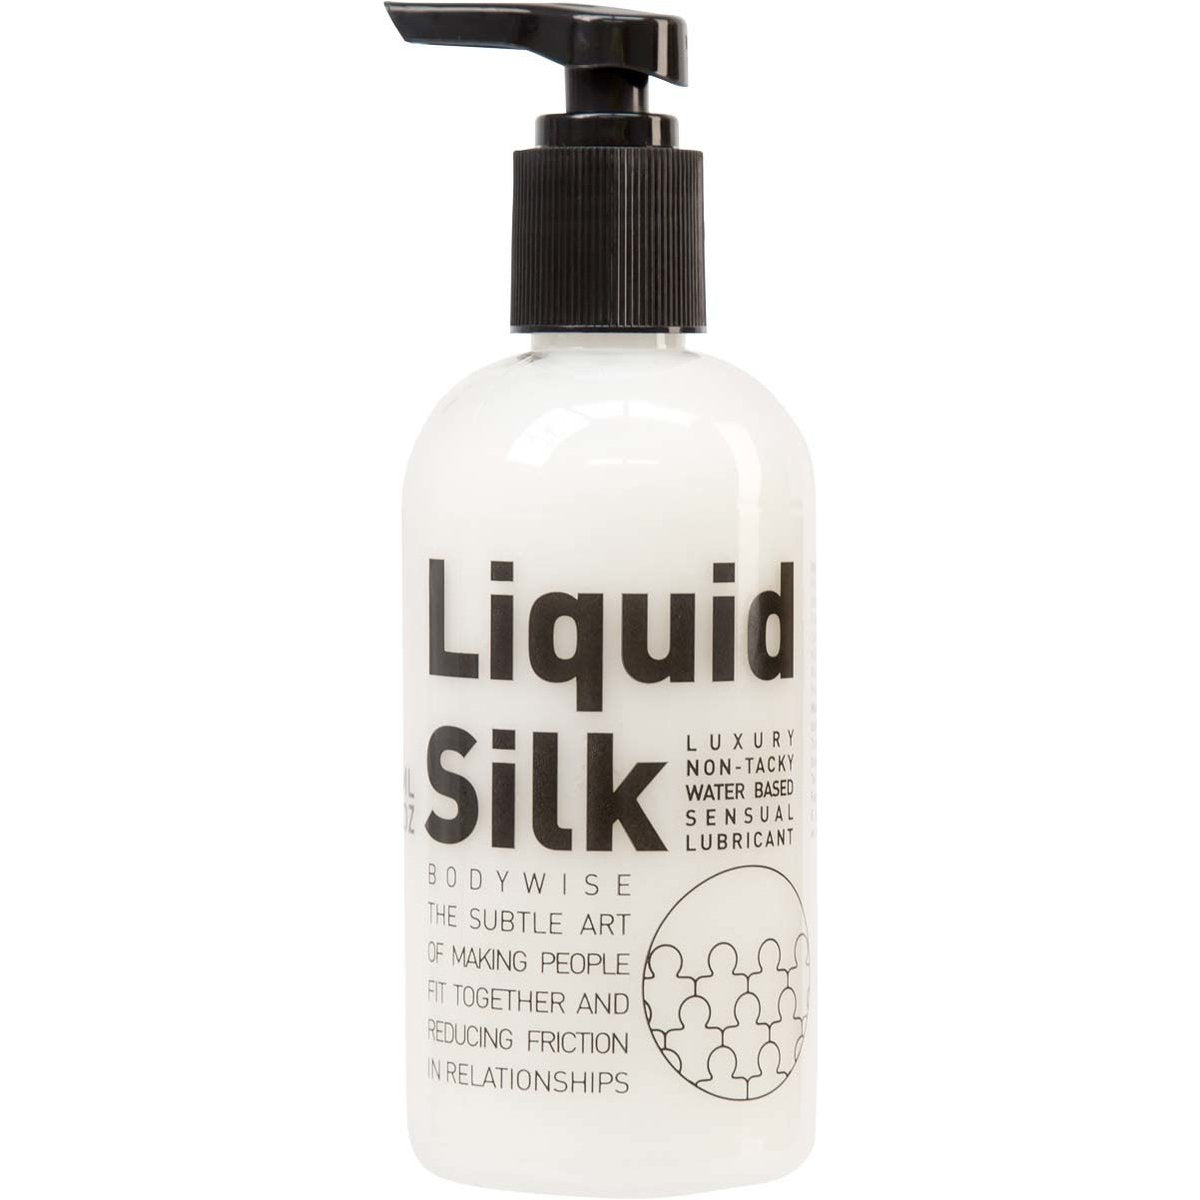 Liquid Silk Buy now in Toronto